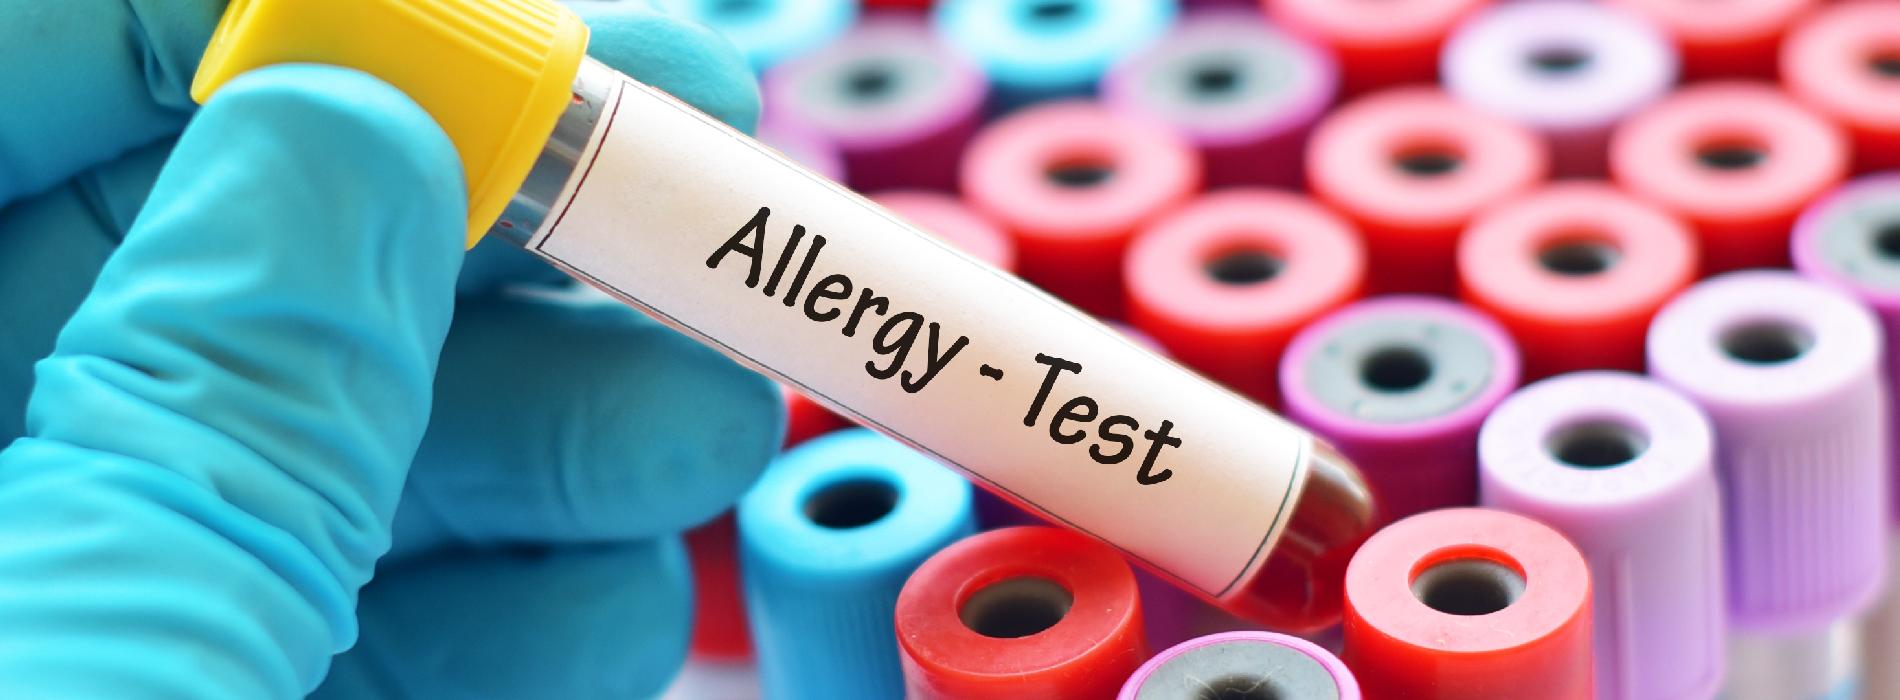 Testy alergiczne - jaka jest ich cena?